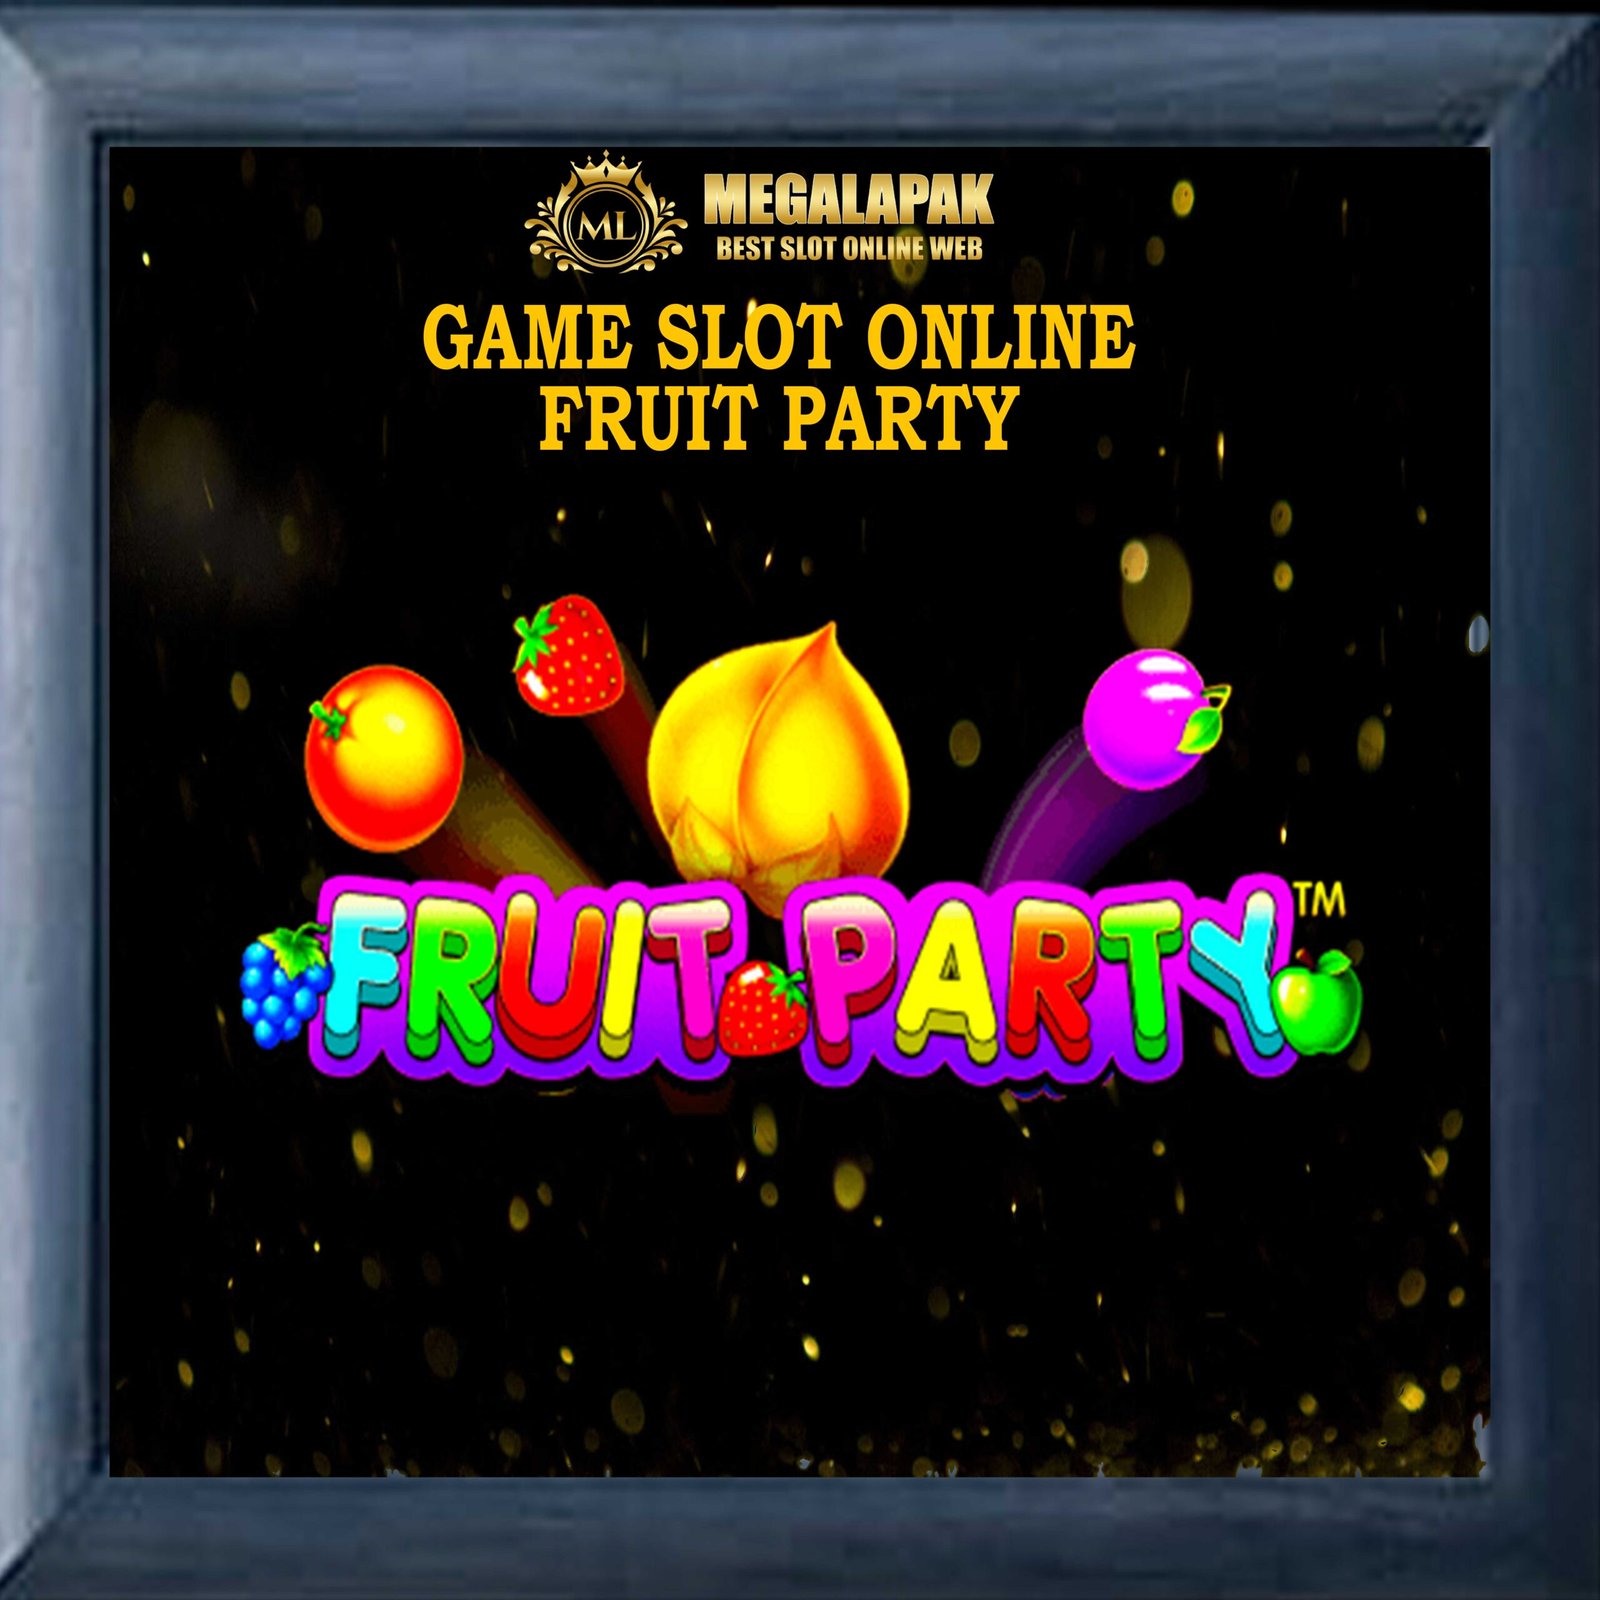 Slot Online Fruit Party Megalapak